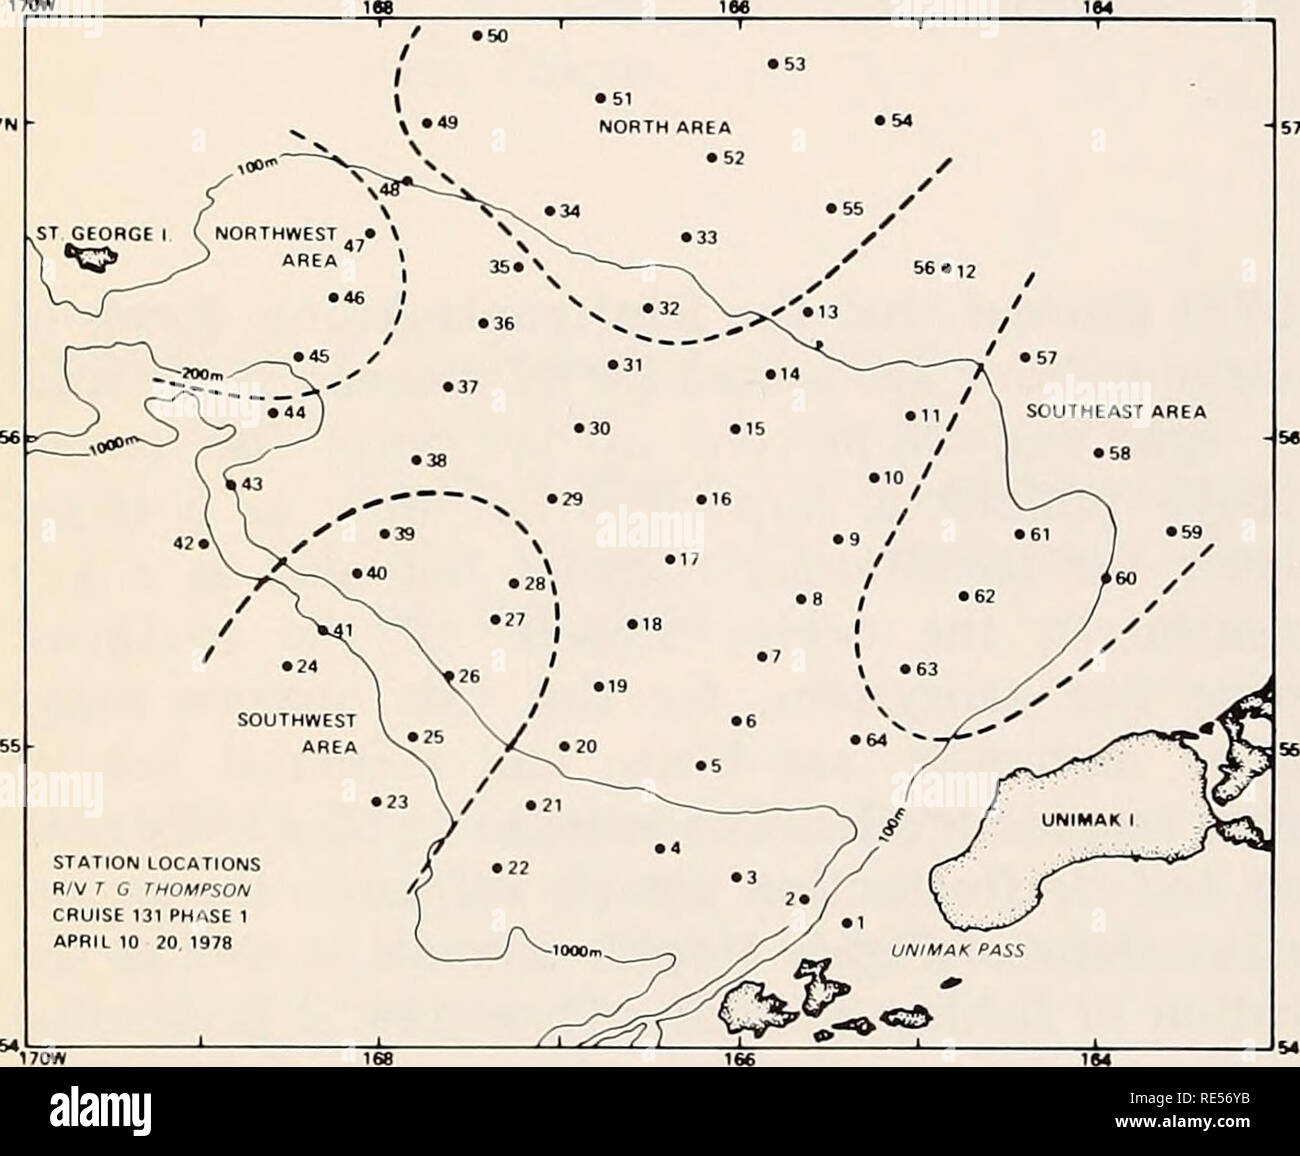 . El Mar de Bering Oriental estante: oceanografía y recursos / editado por Donald W. Hood y John A. Calder. La oceanografía del Mar de Bering. 994 ecología de plancton el patrón de distribución de la lucioperca americana pollock huevos y describe las diferencias estacionales y geográficas en tamaño de huevo en el sureste del Mar de Bering. Materiales y métodos área de estudio y la temporada lucioperca americana pollock los huevos fueron recolectados del 10 al 29 de abril de 1978 durante el crucero por el Mar de Bering al sureste de RV Thomas G. Thompson. El área de estudio fue de aproximadamente 370 X 370 km entre las latitudes de 54°30'N y 57°20'N y entre las longitudes de 169°30'W Foto de stock